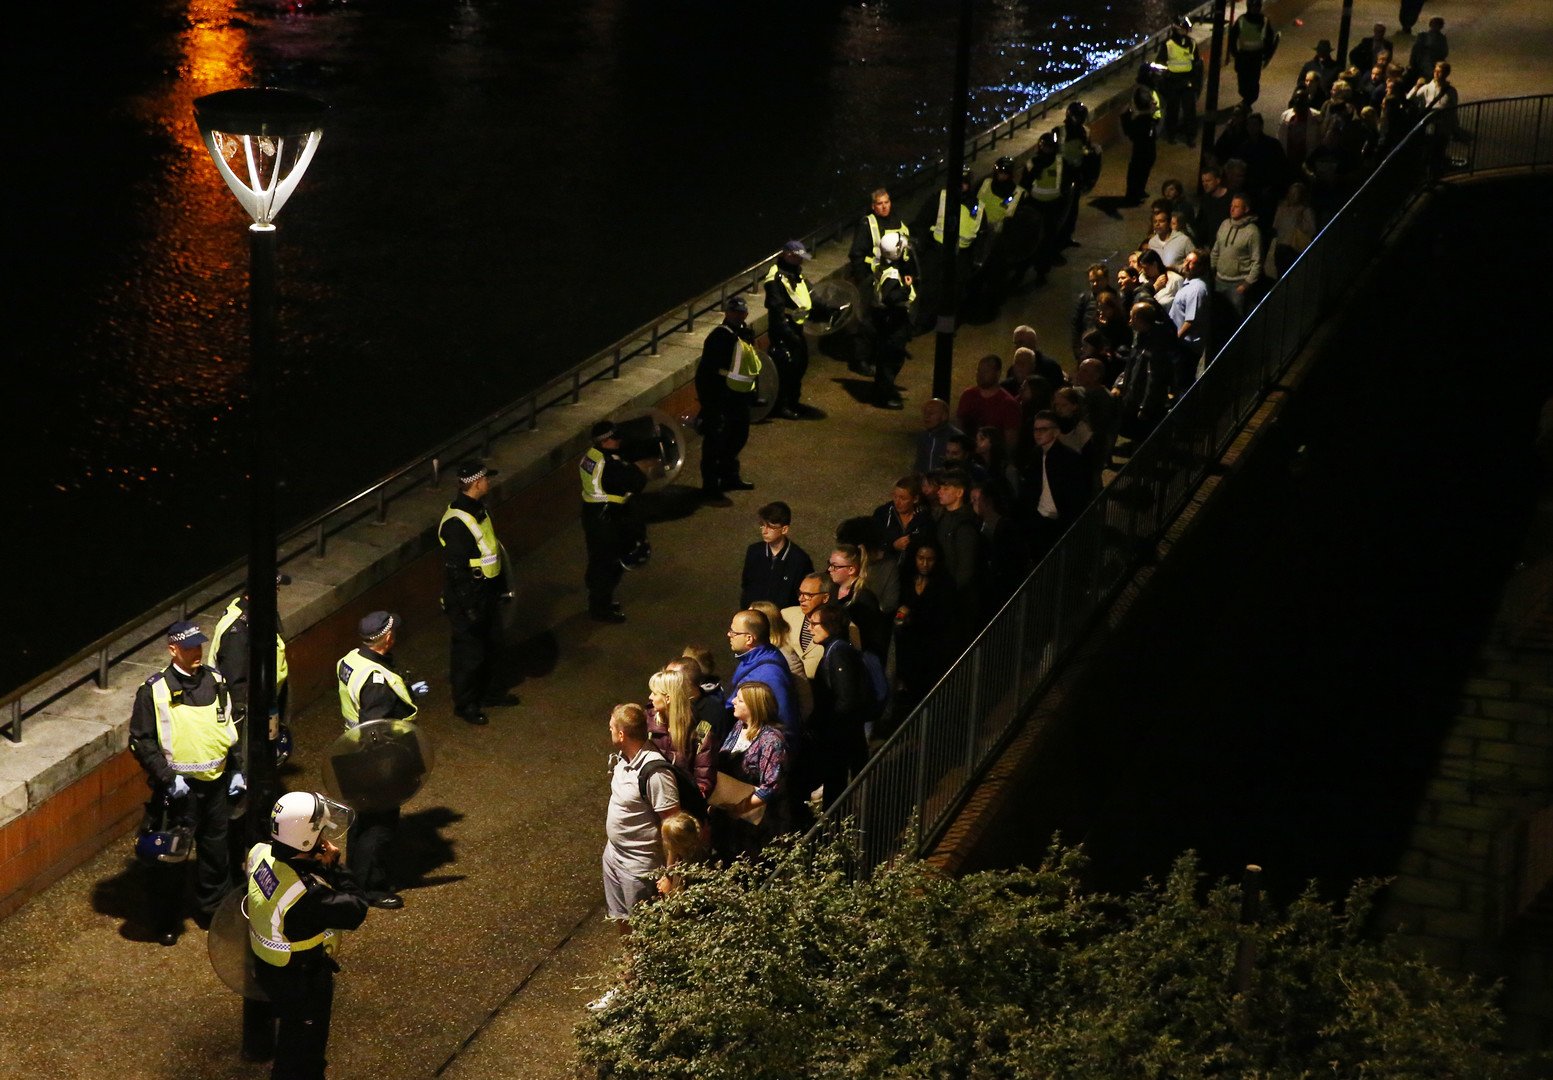 7 قتلى و48 جريحا ضحايا هجمات لندن وتصفية 3 مهاجمين